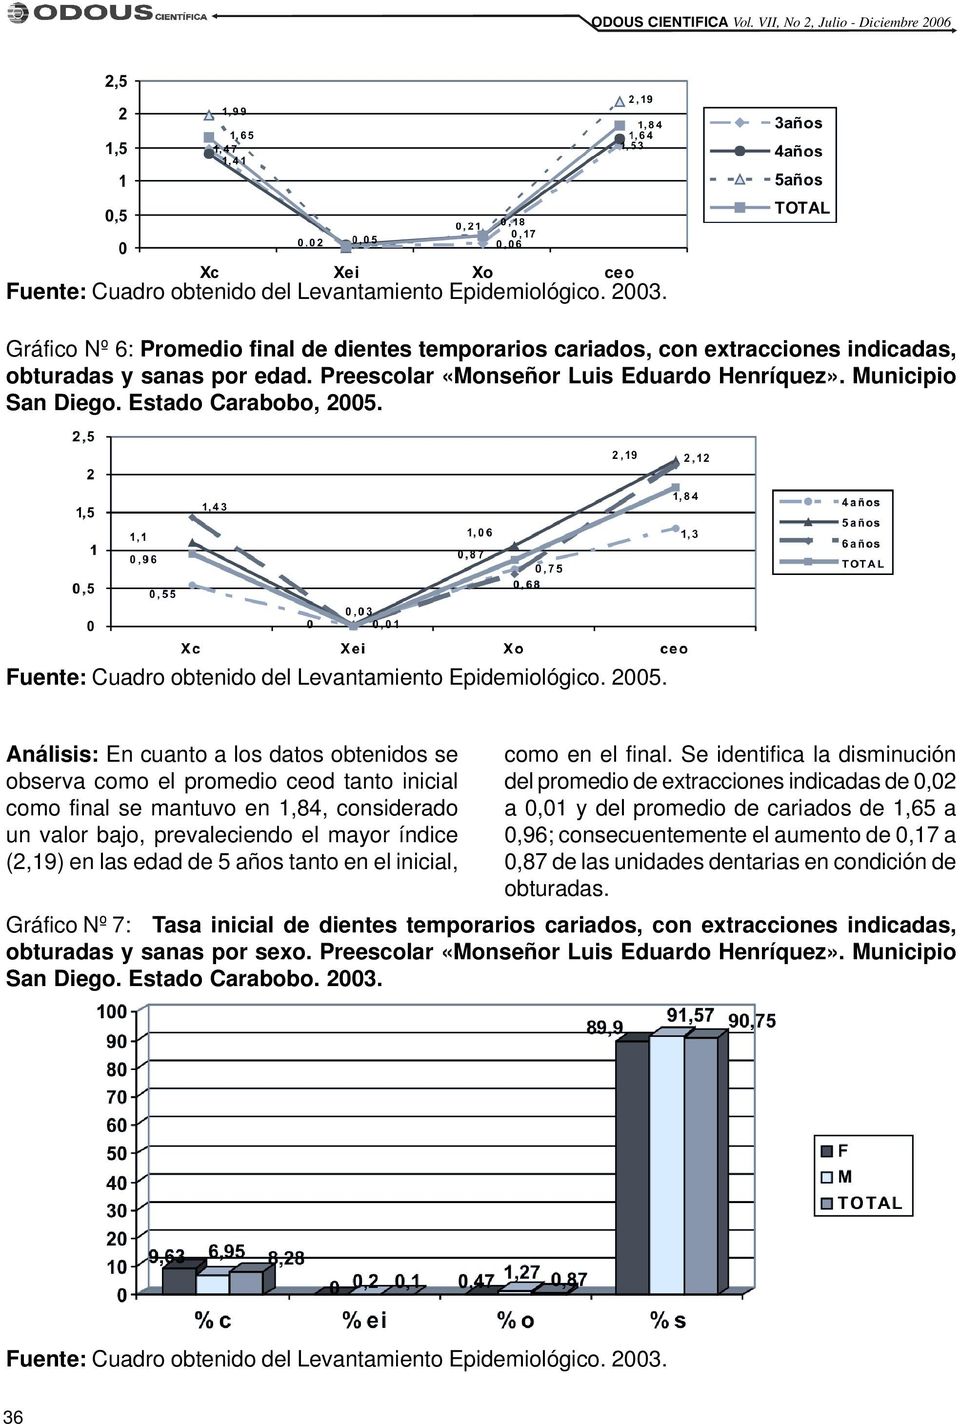 Fuente: Cuadro obtenido del Levantamiento Epidemiológico. 2005.